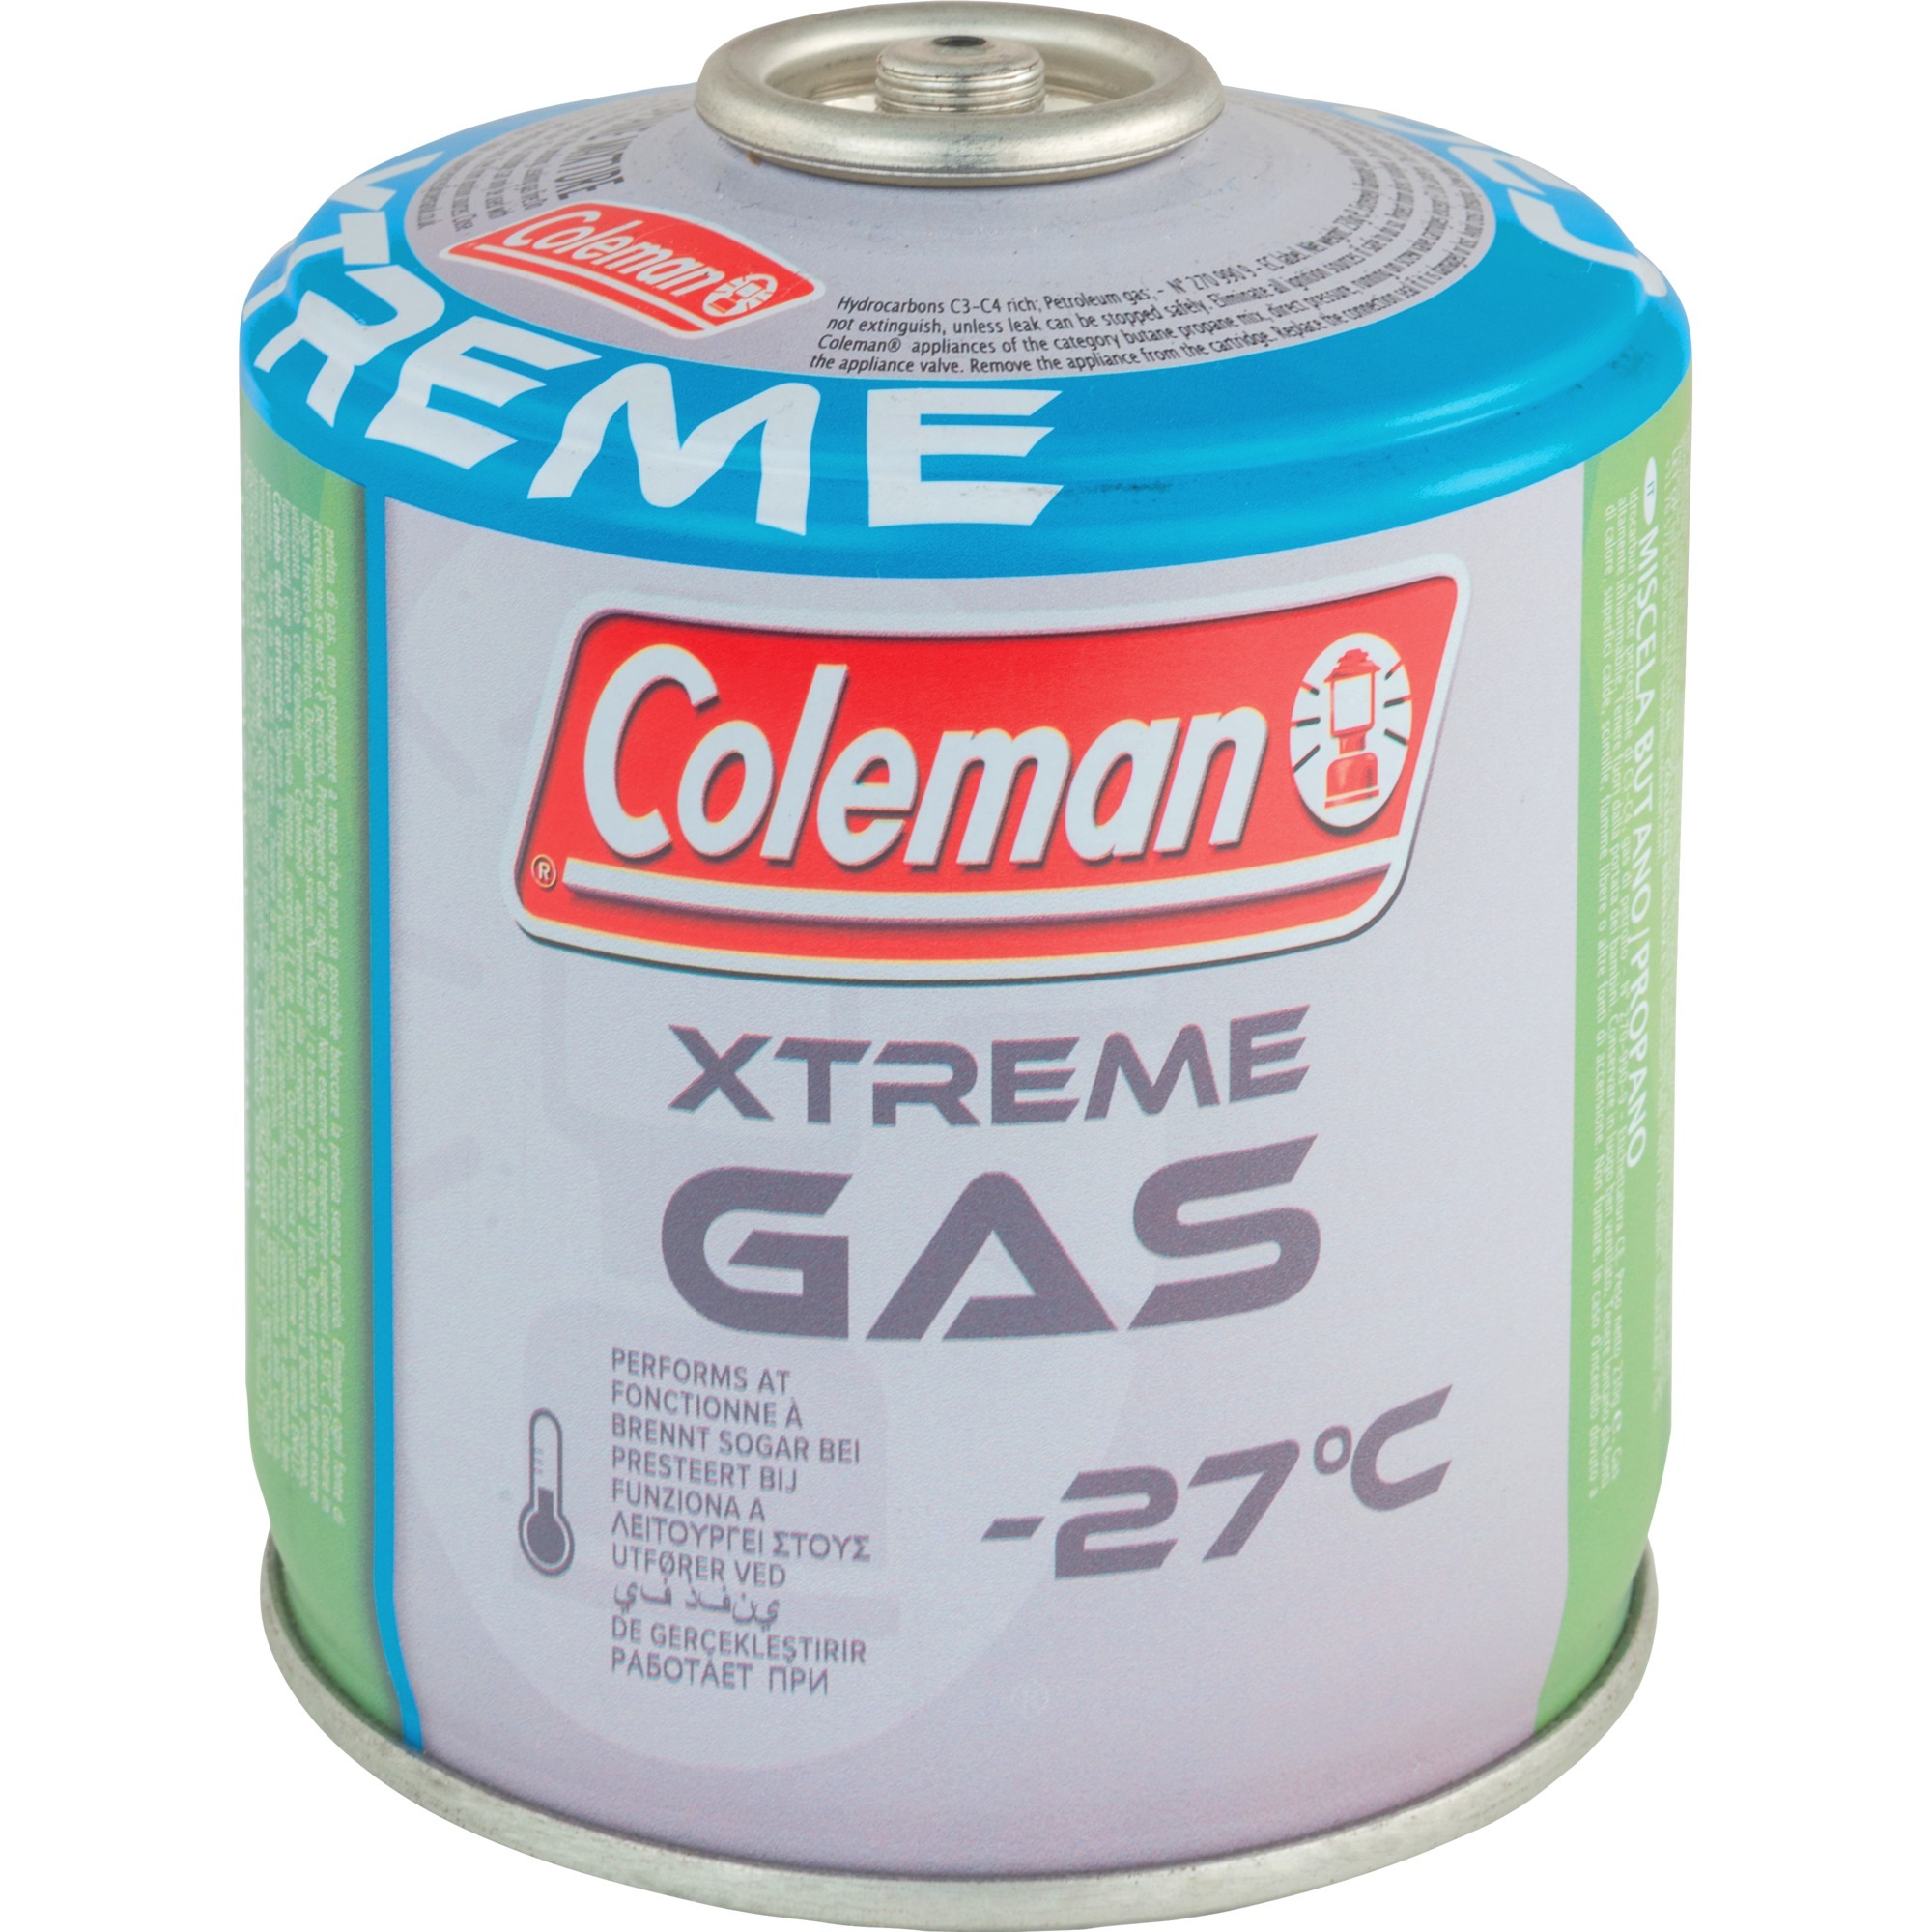 Image of Alternate - Ventil-Gaskartusche C300 Xtreme online einkaufen bei Alternate